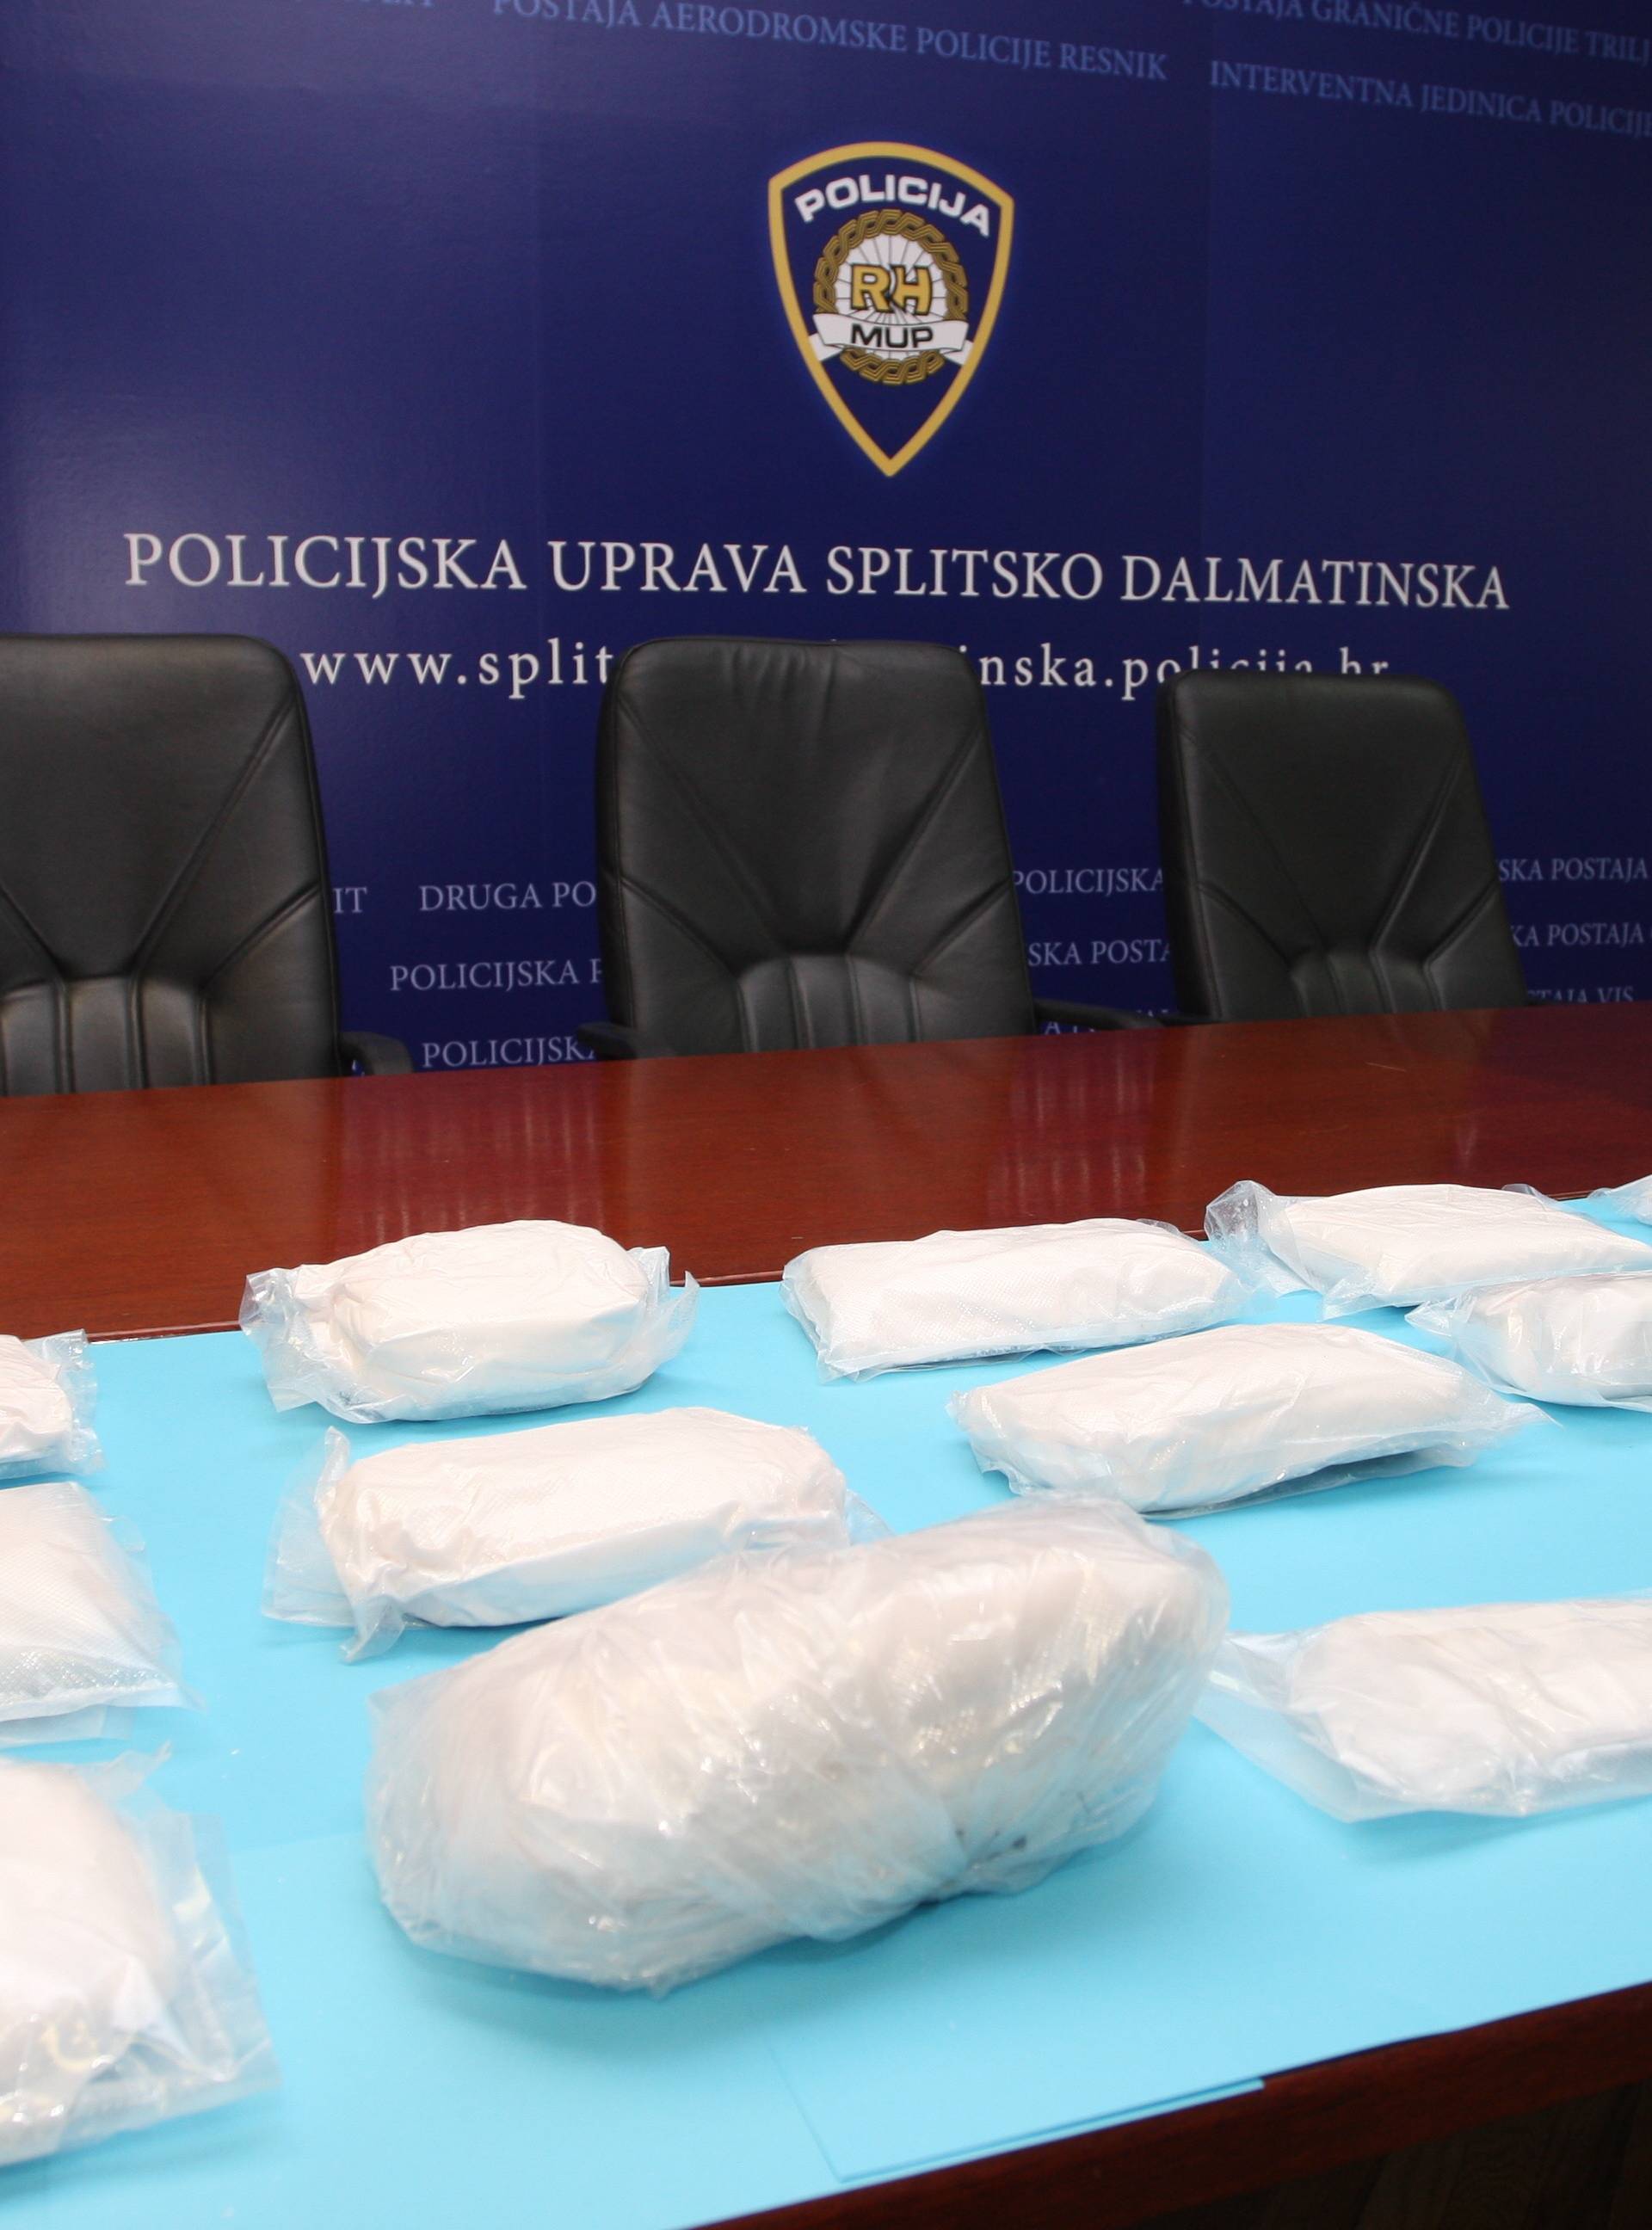 Rekordna zapljena amfetamina u Splitu: Pronašli su čak 18 kg